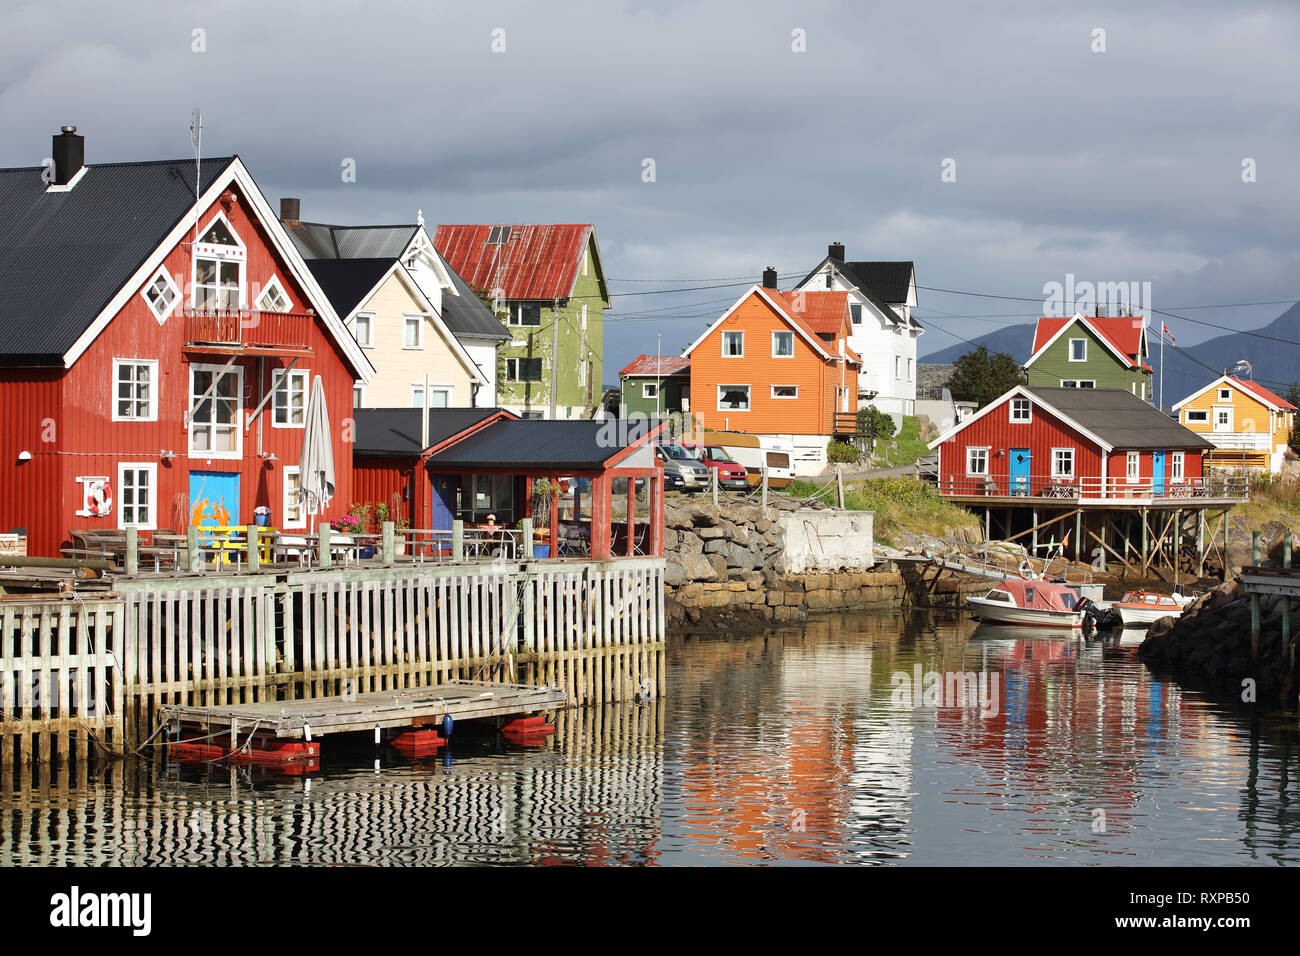 Maisons, eatery et du quai le long des quais à Henningsvær, Municipalité de Vestvagoya, archipel des Lofoten, Norvège. Banque D'Images